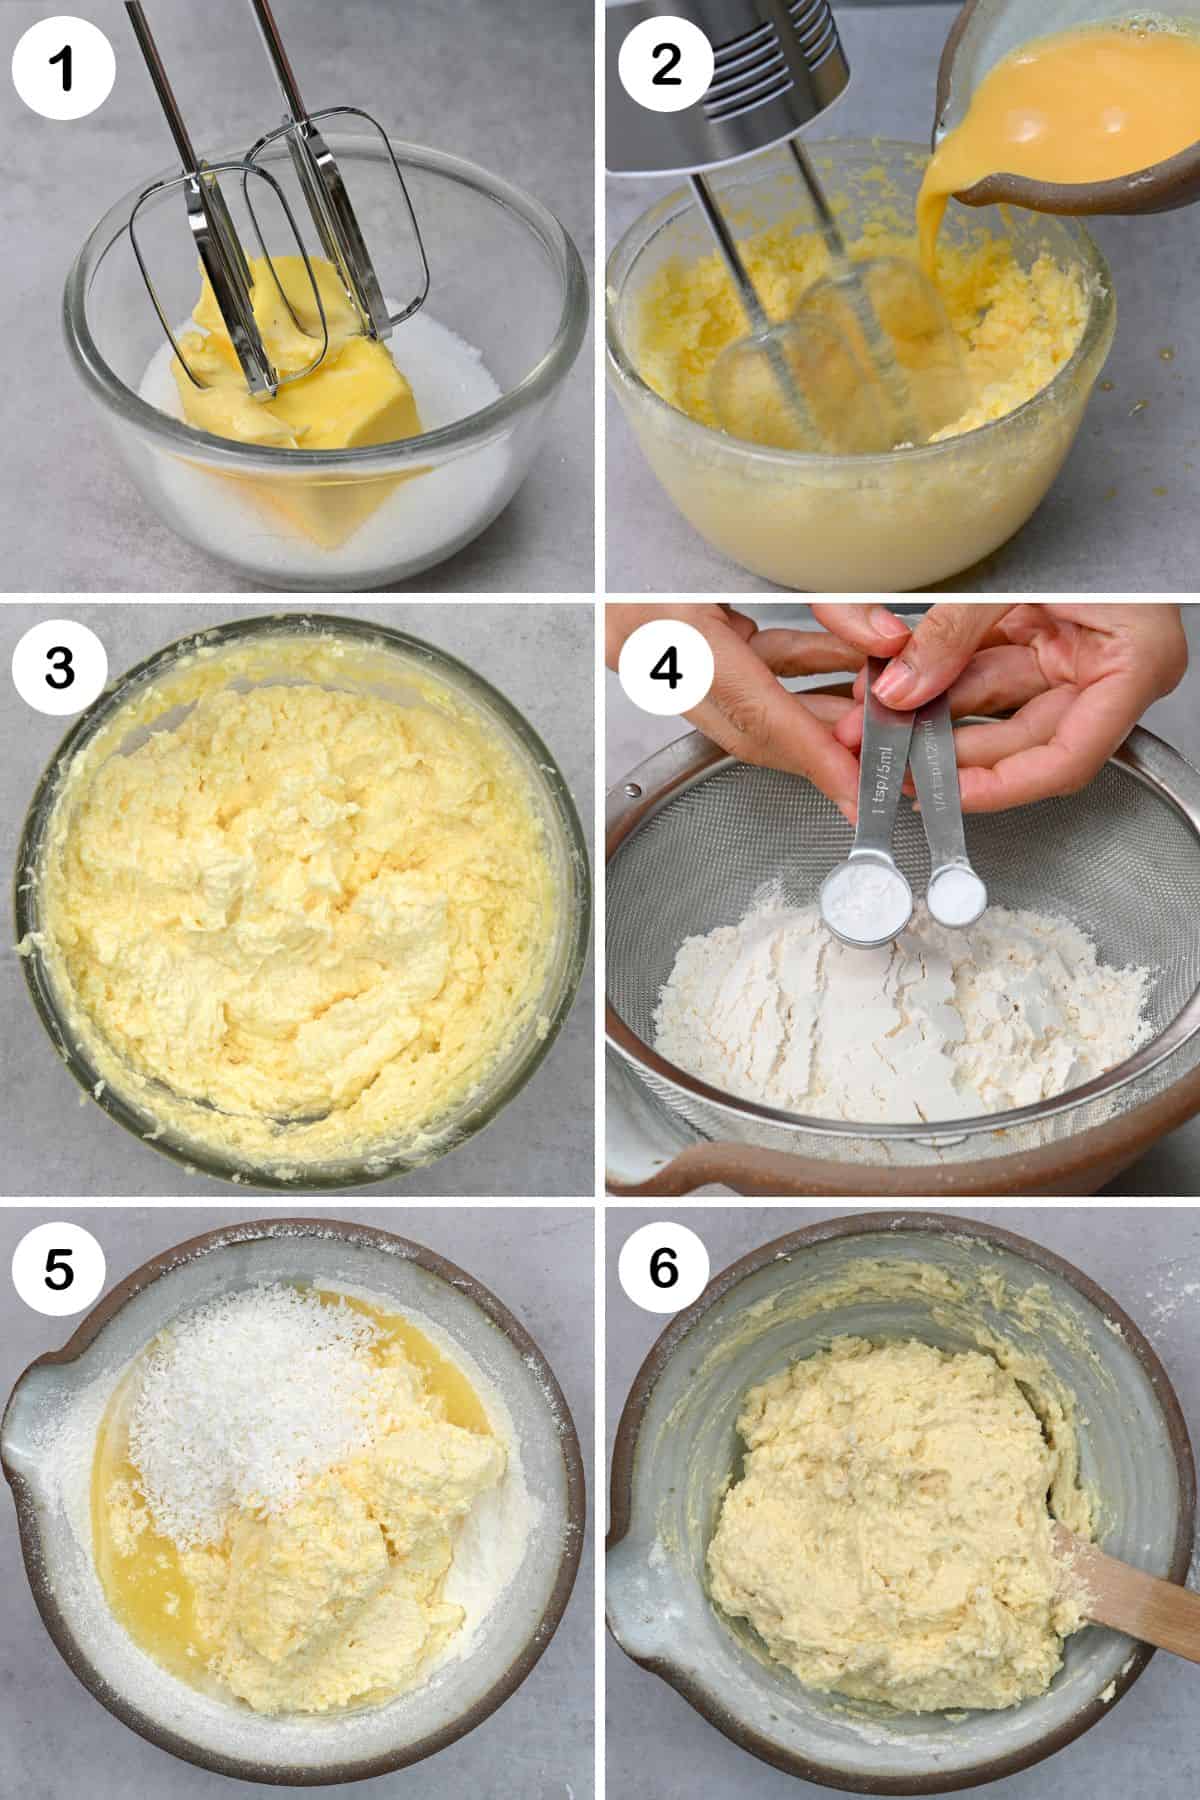 Steps for preparing the batter of pineapple upsidedown cake